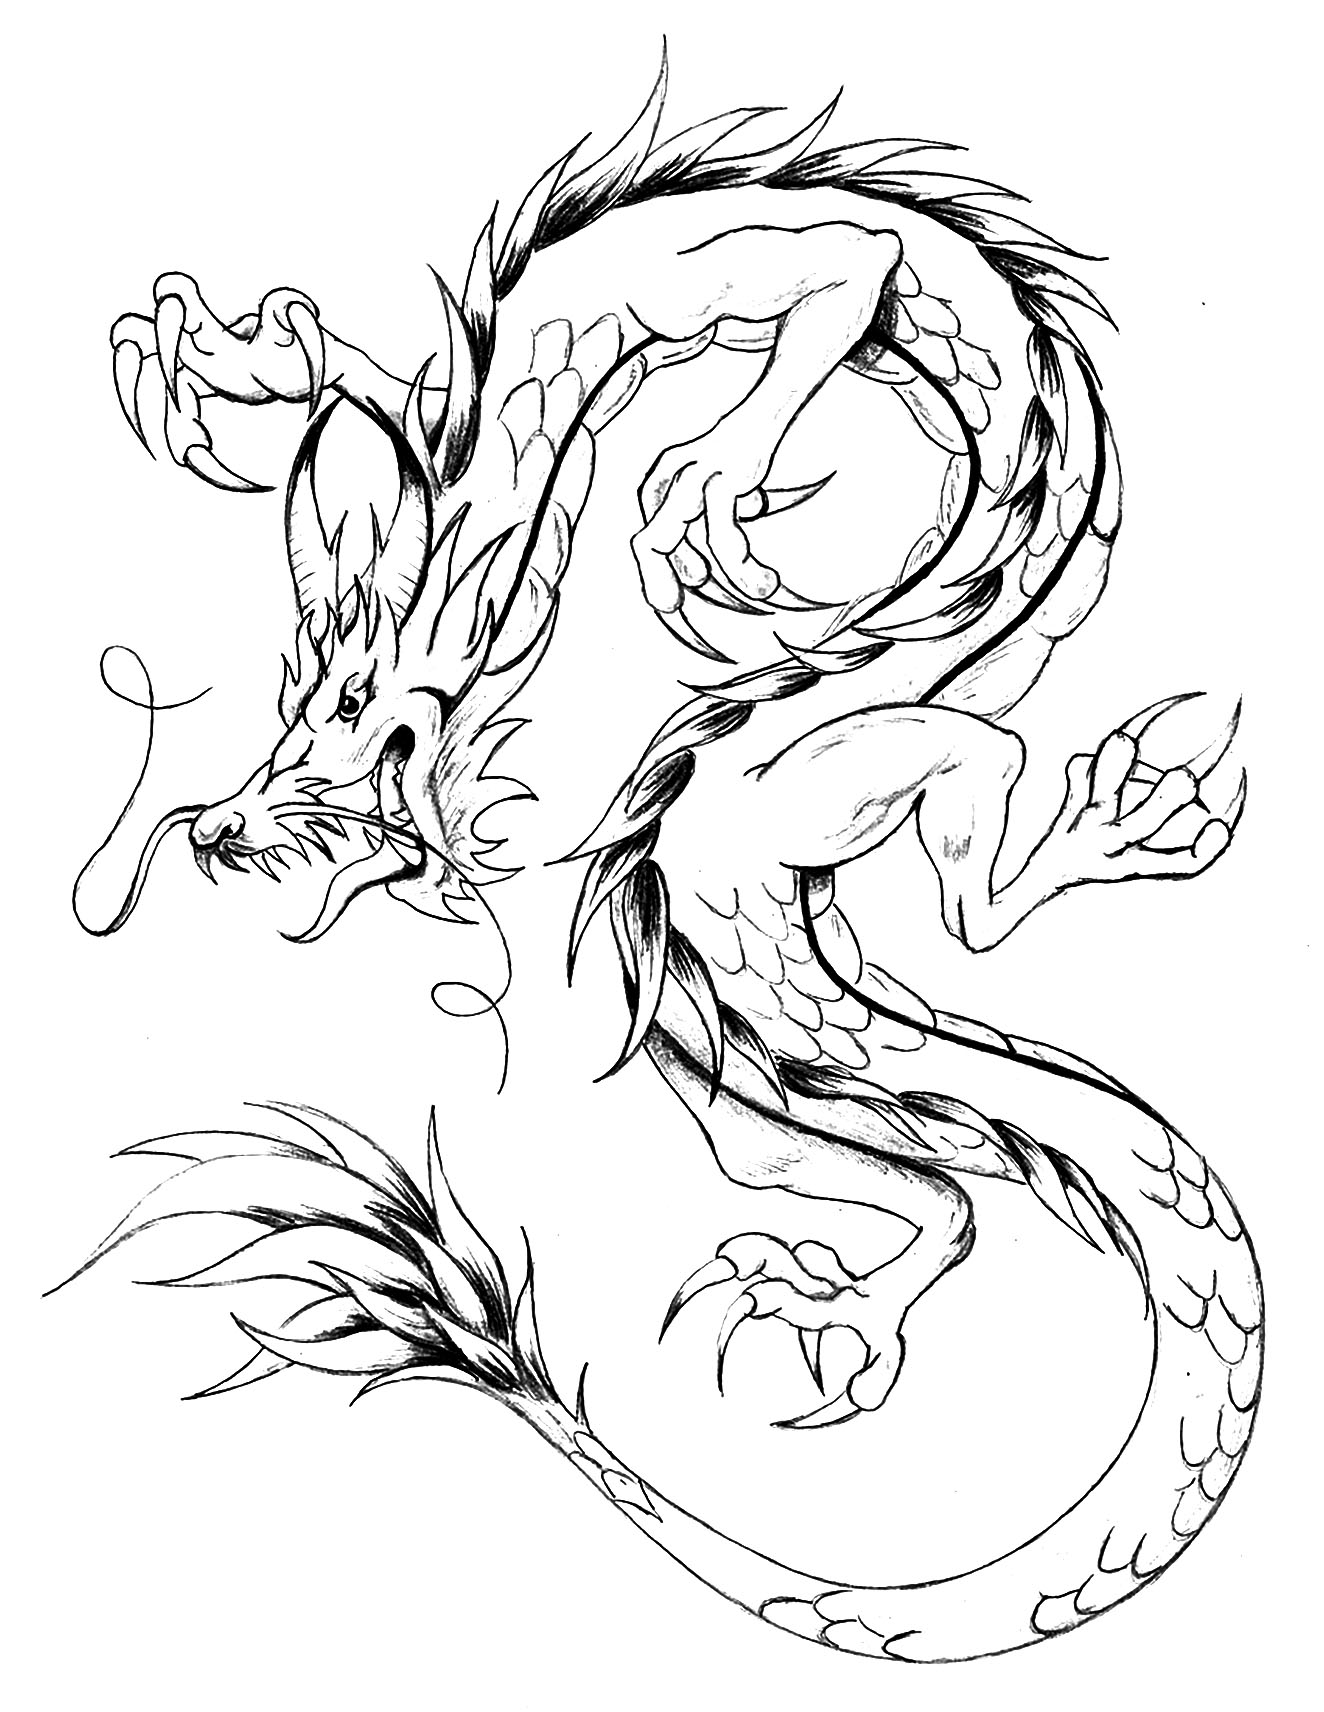 Giant dragon, asian style